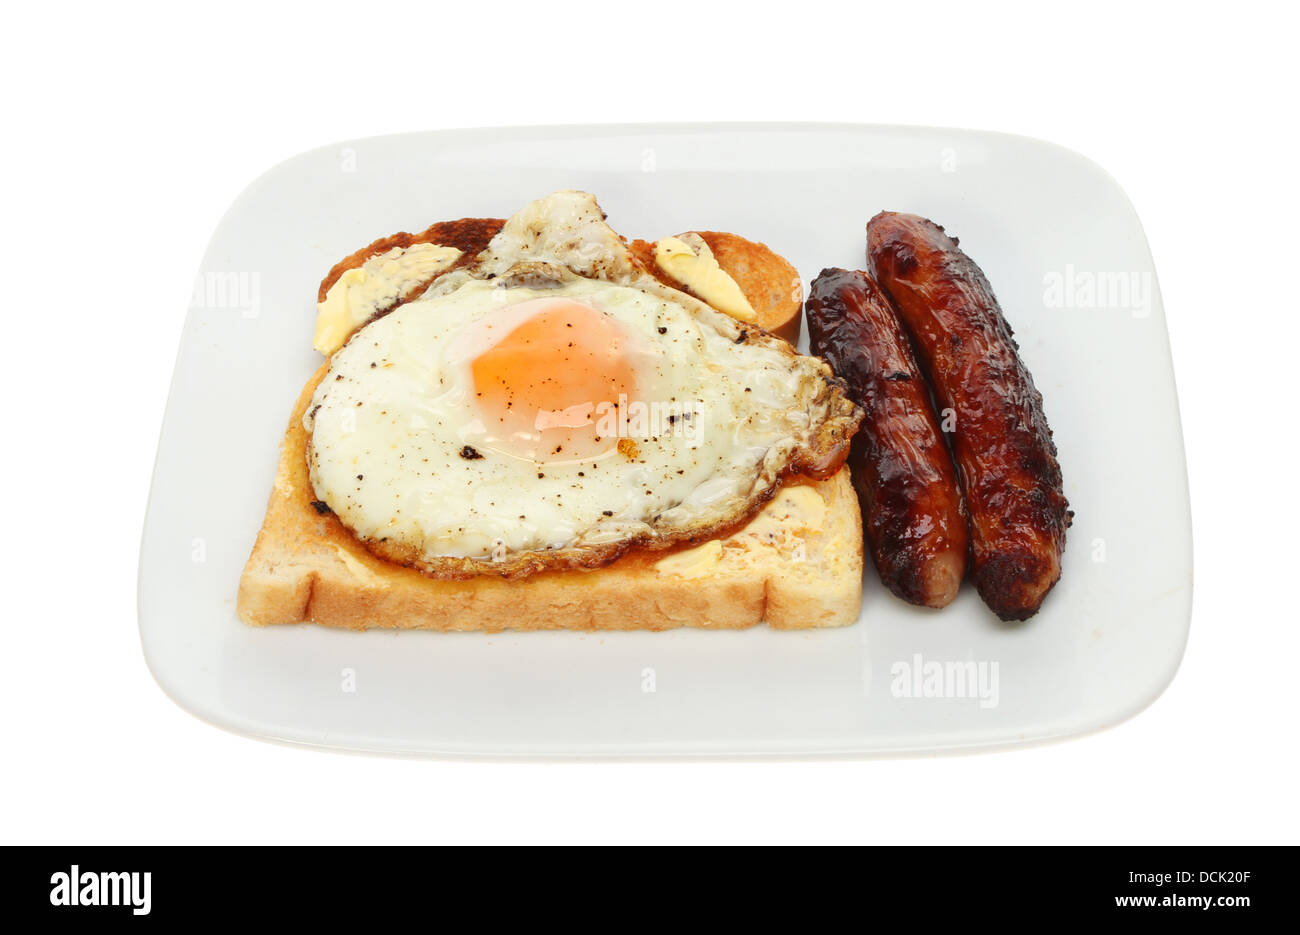 Embutidos y huevo frito sobre una tostada en un plato aislado contra un blanco Foto de stock